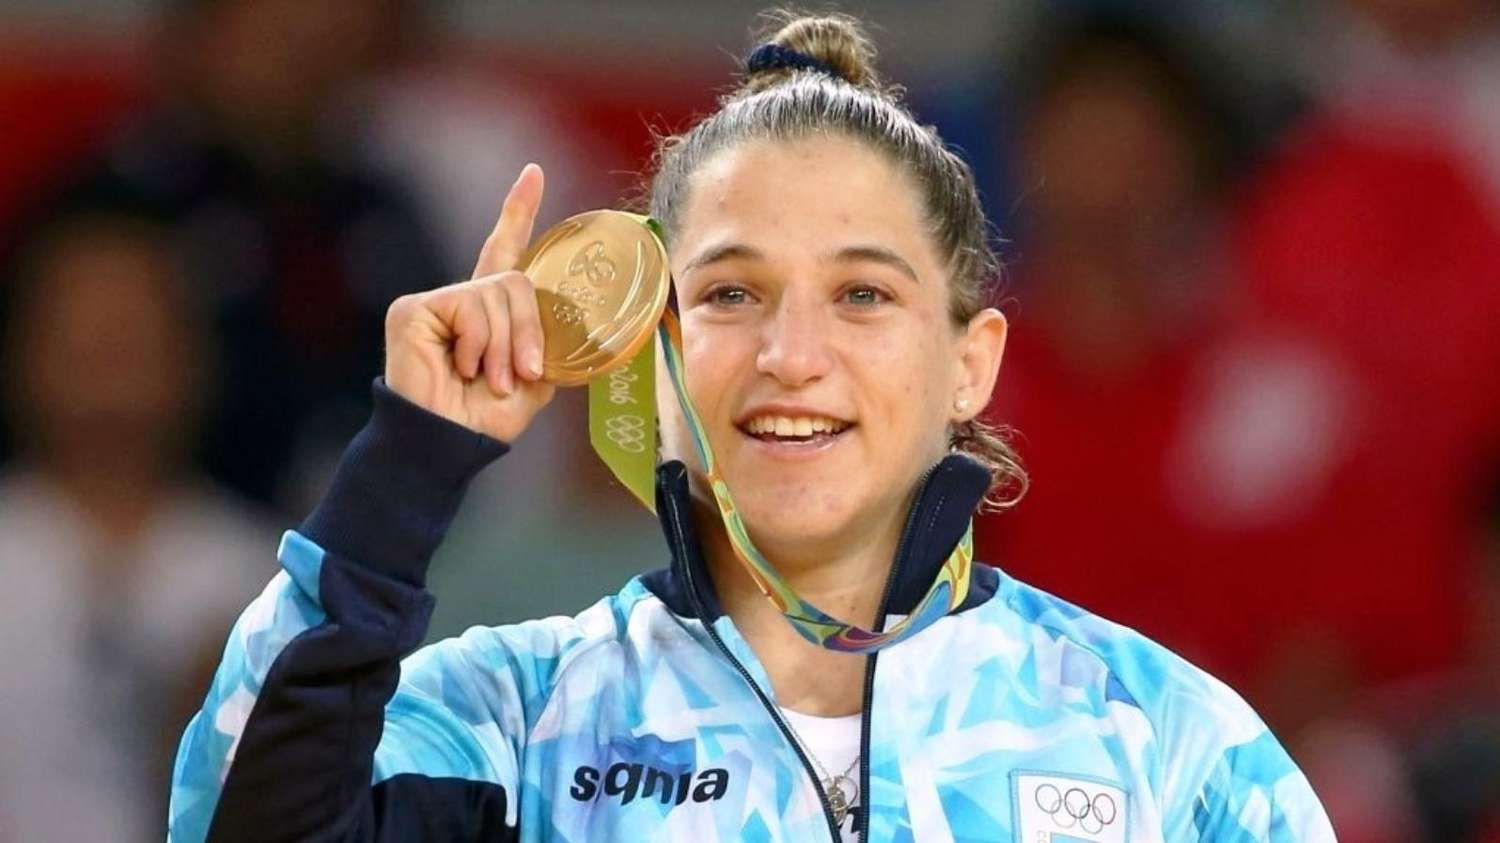 Recortes en Judo: La sanfernandina, Paula Pareto, renuncia a su beca para apoyar a otros atletas en los Juegos Olímpicos